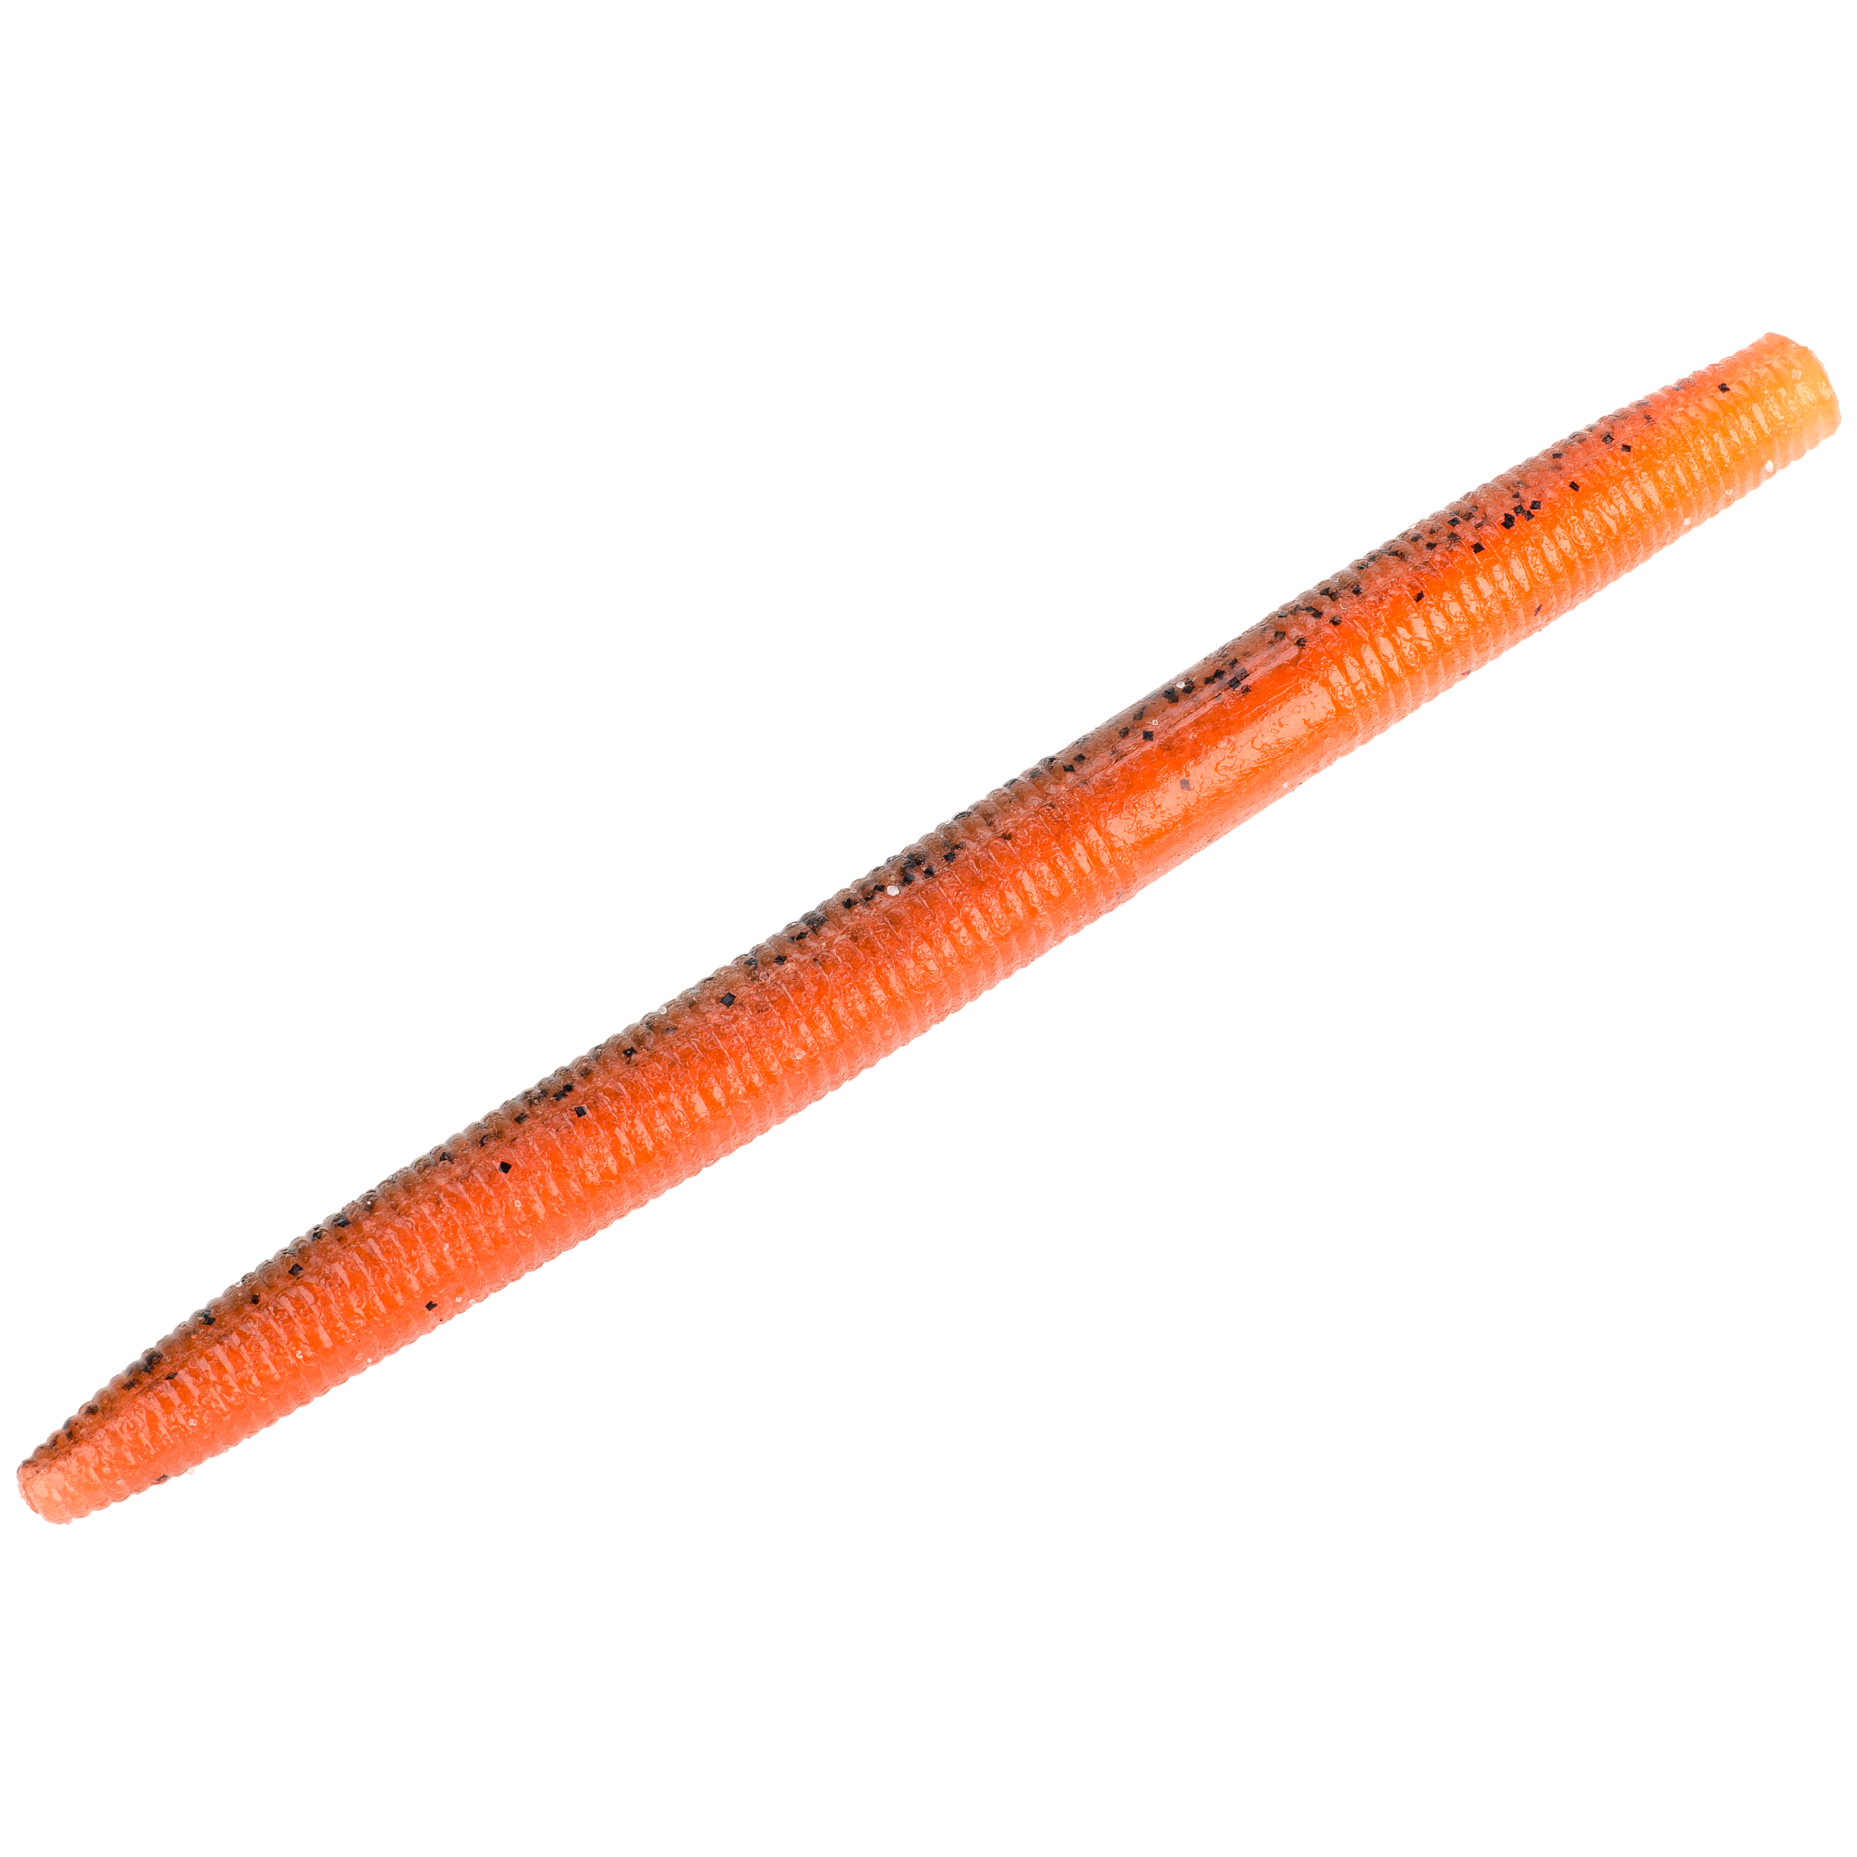 Strike King 3x ElaZtech Kvd's Finesse Worm Peanut Butter Jelly 7in for sale  online